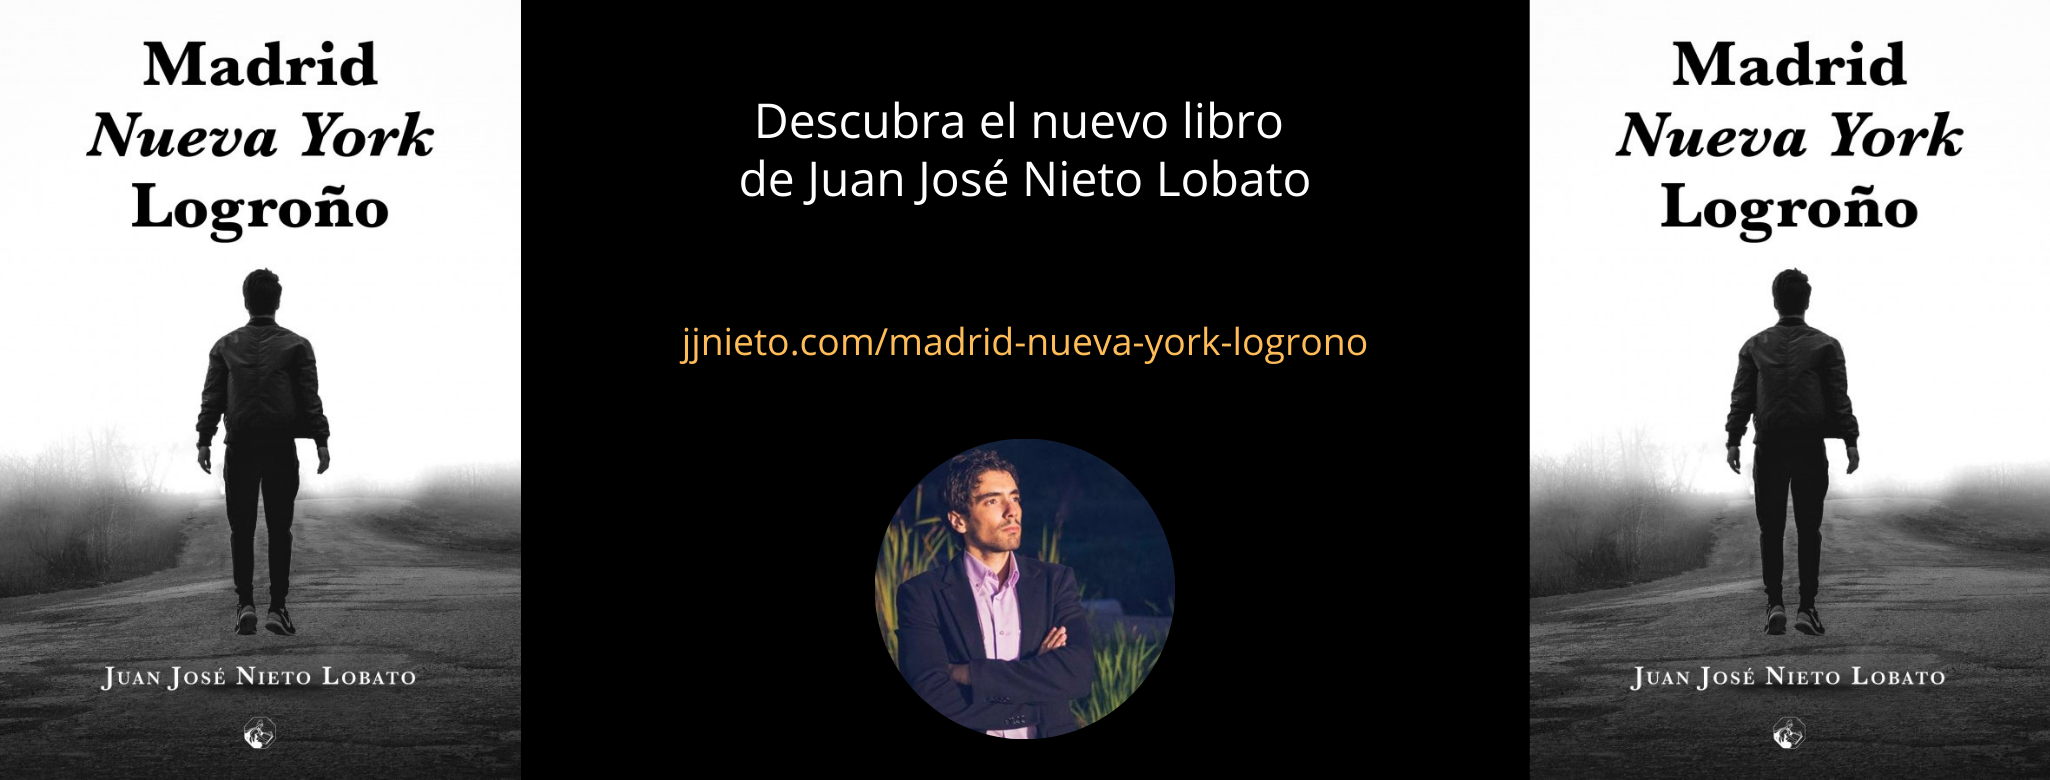 Descubra el nuevo libro de Juan José Nieto Lobato Madrid, Nueva York, Logroño de Editorial Amarante